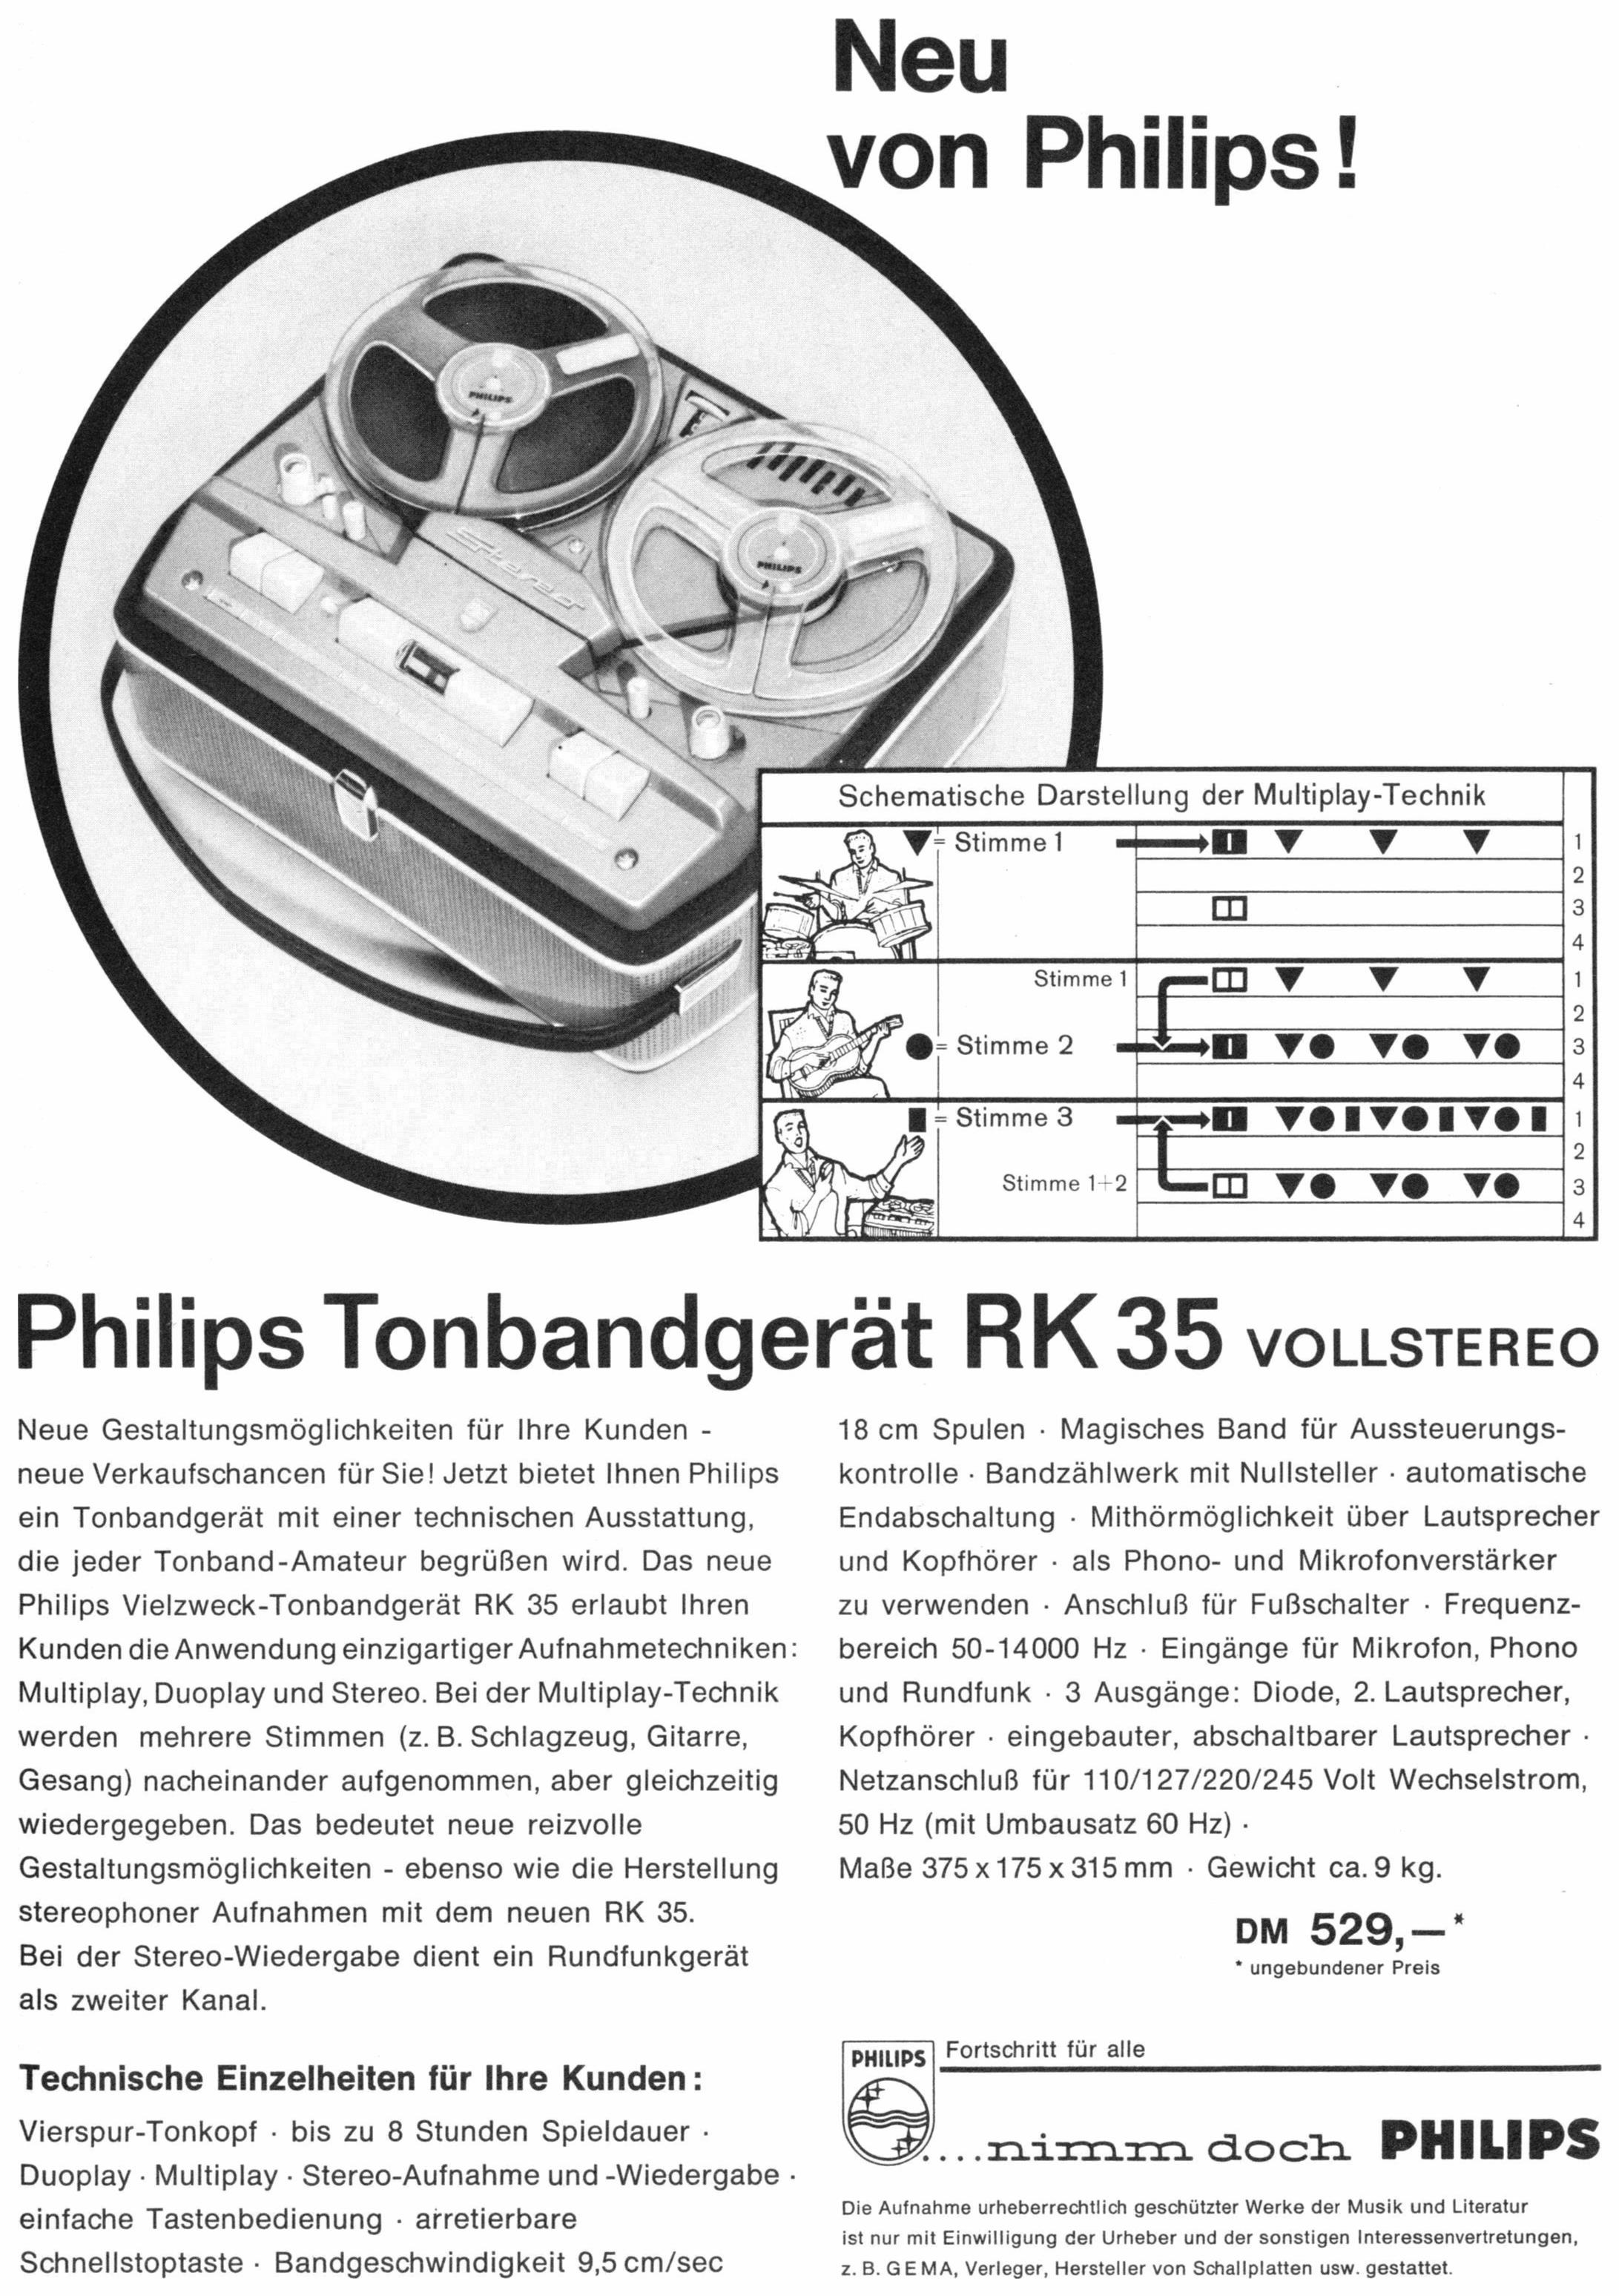 Philips 1961 03.jpg